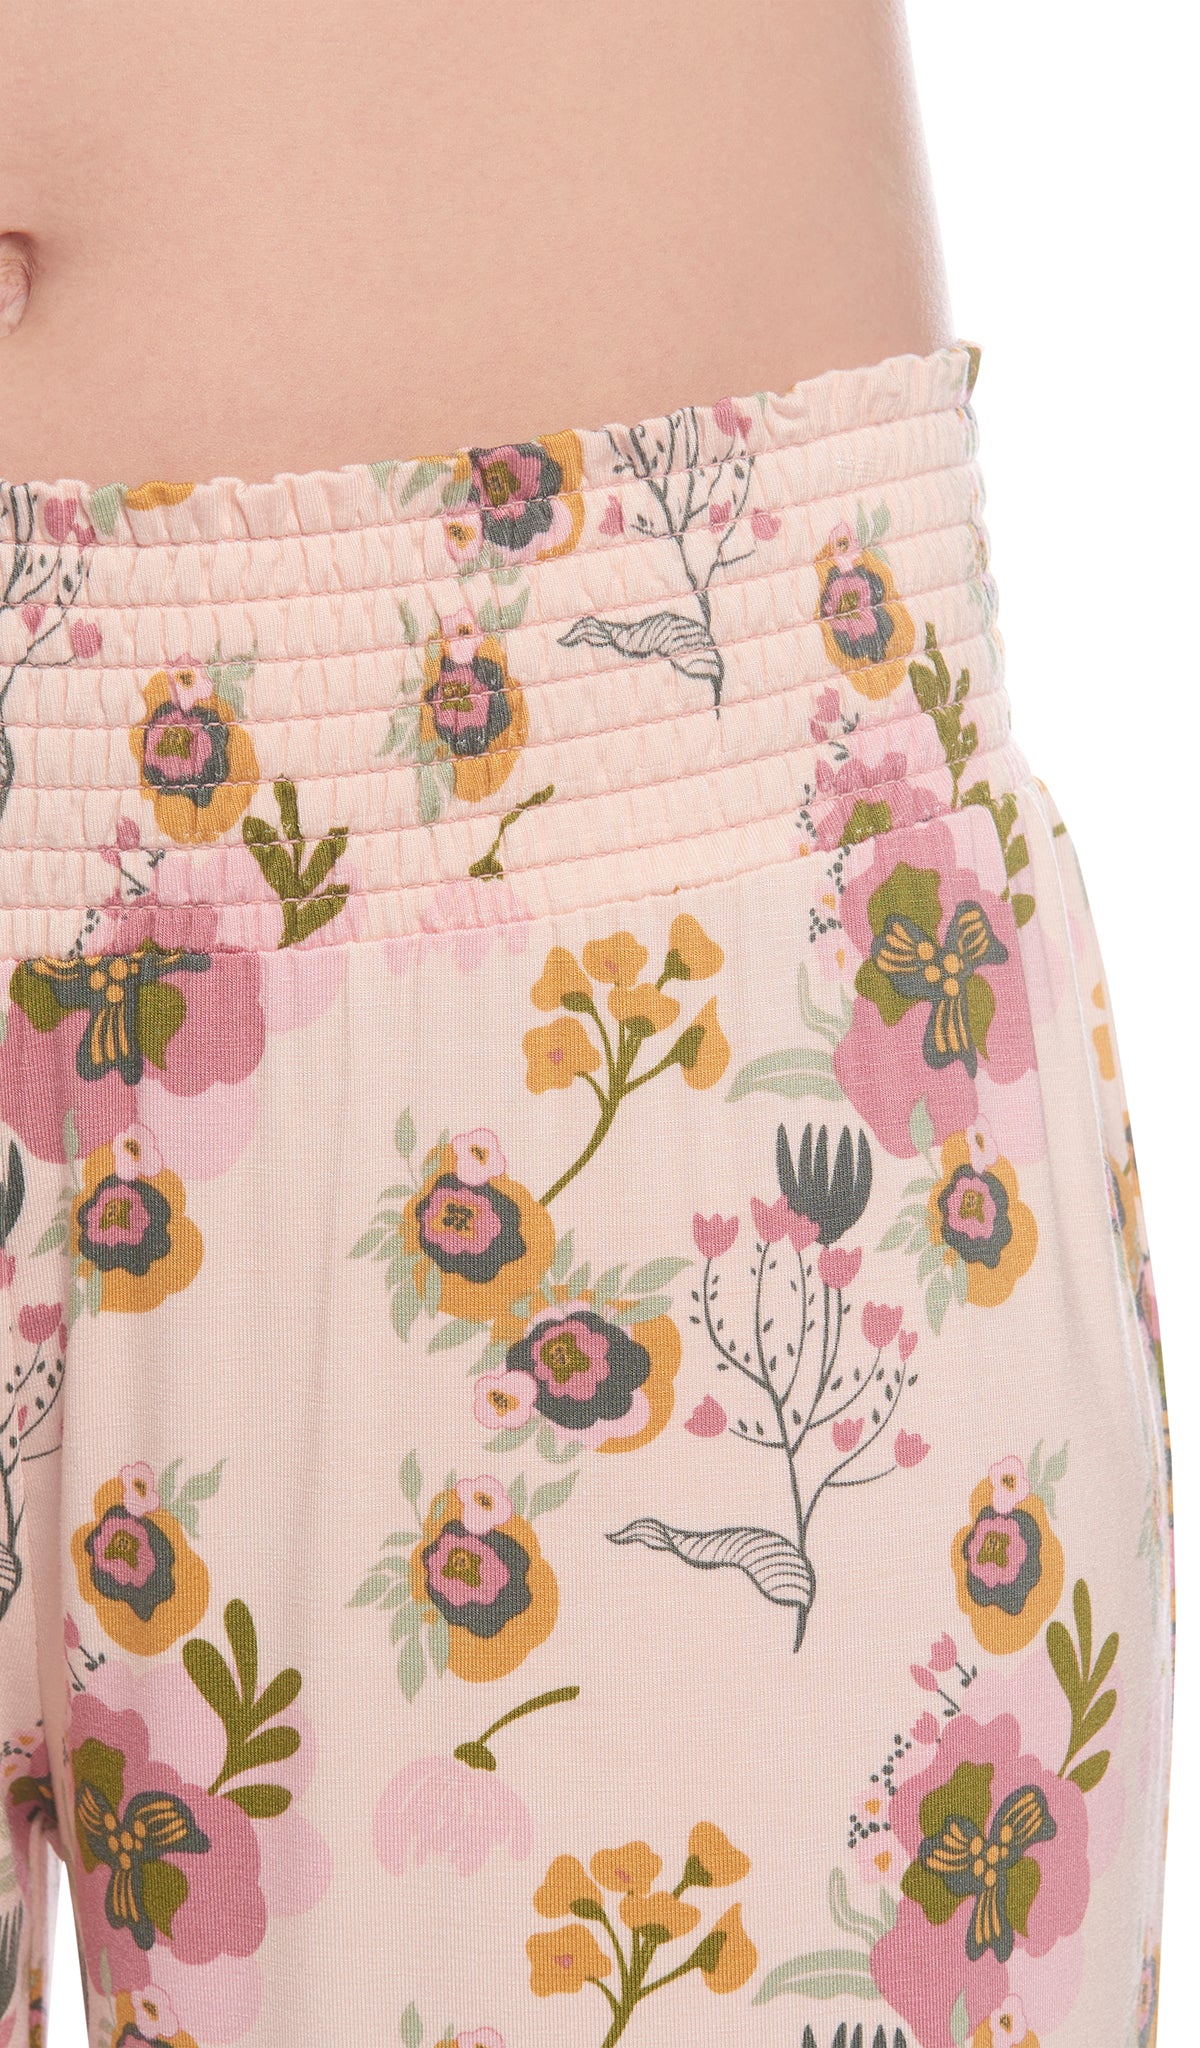 Camellia Analise 3-Piece Set, detailed shot of smocked elastic waistband.